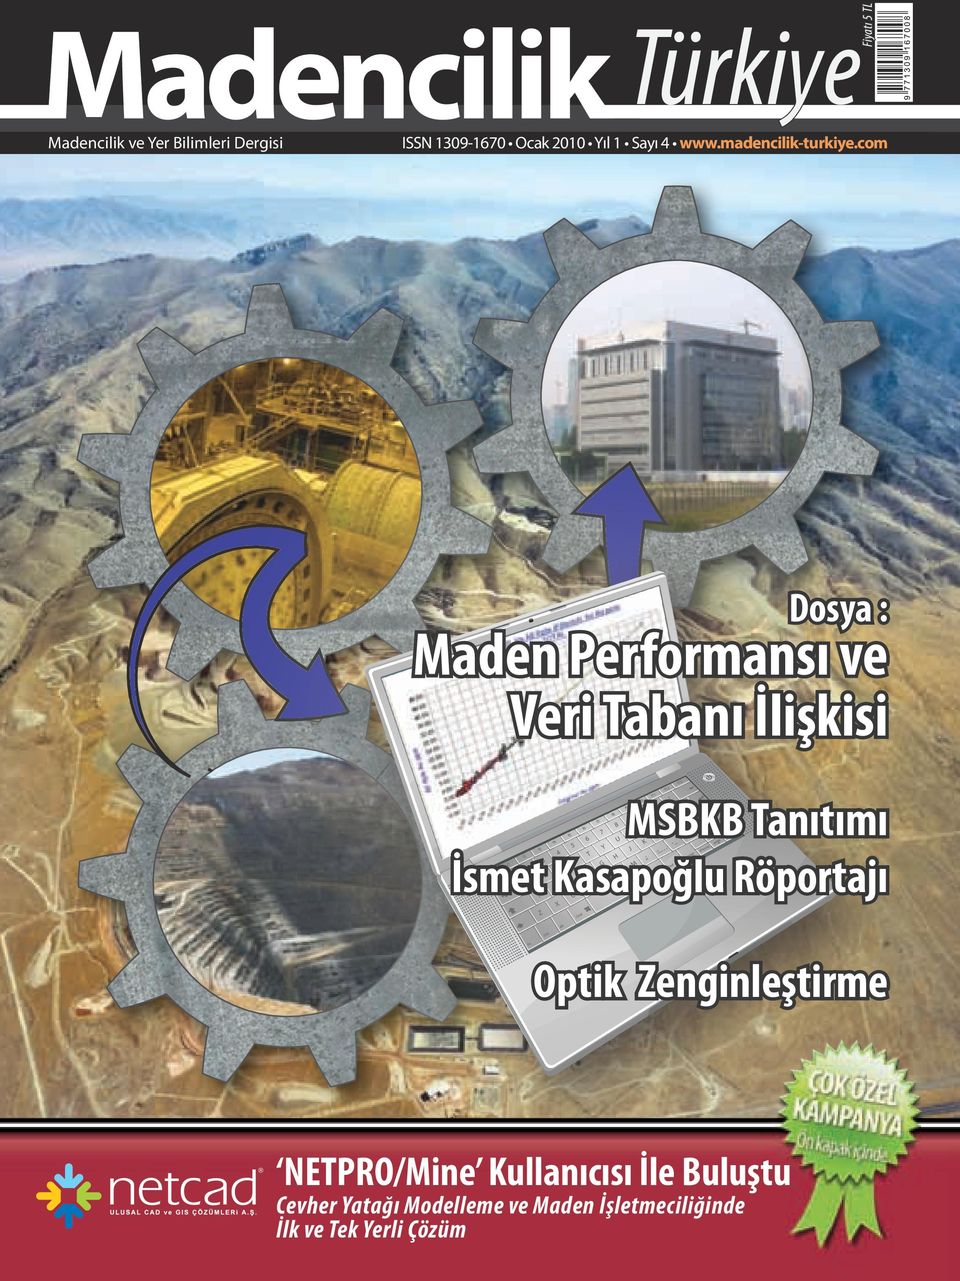 com Dosya : Maden Performansı ve Veri Tabanı İlişkisi MSBKB Tanıtımı İsmet